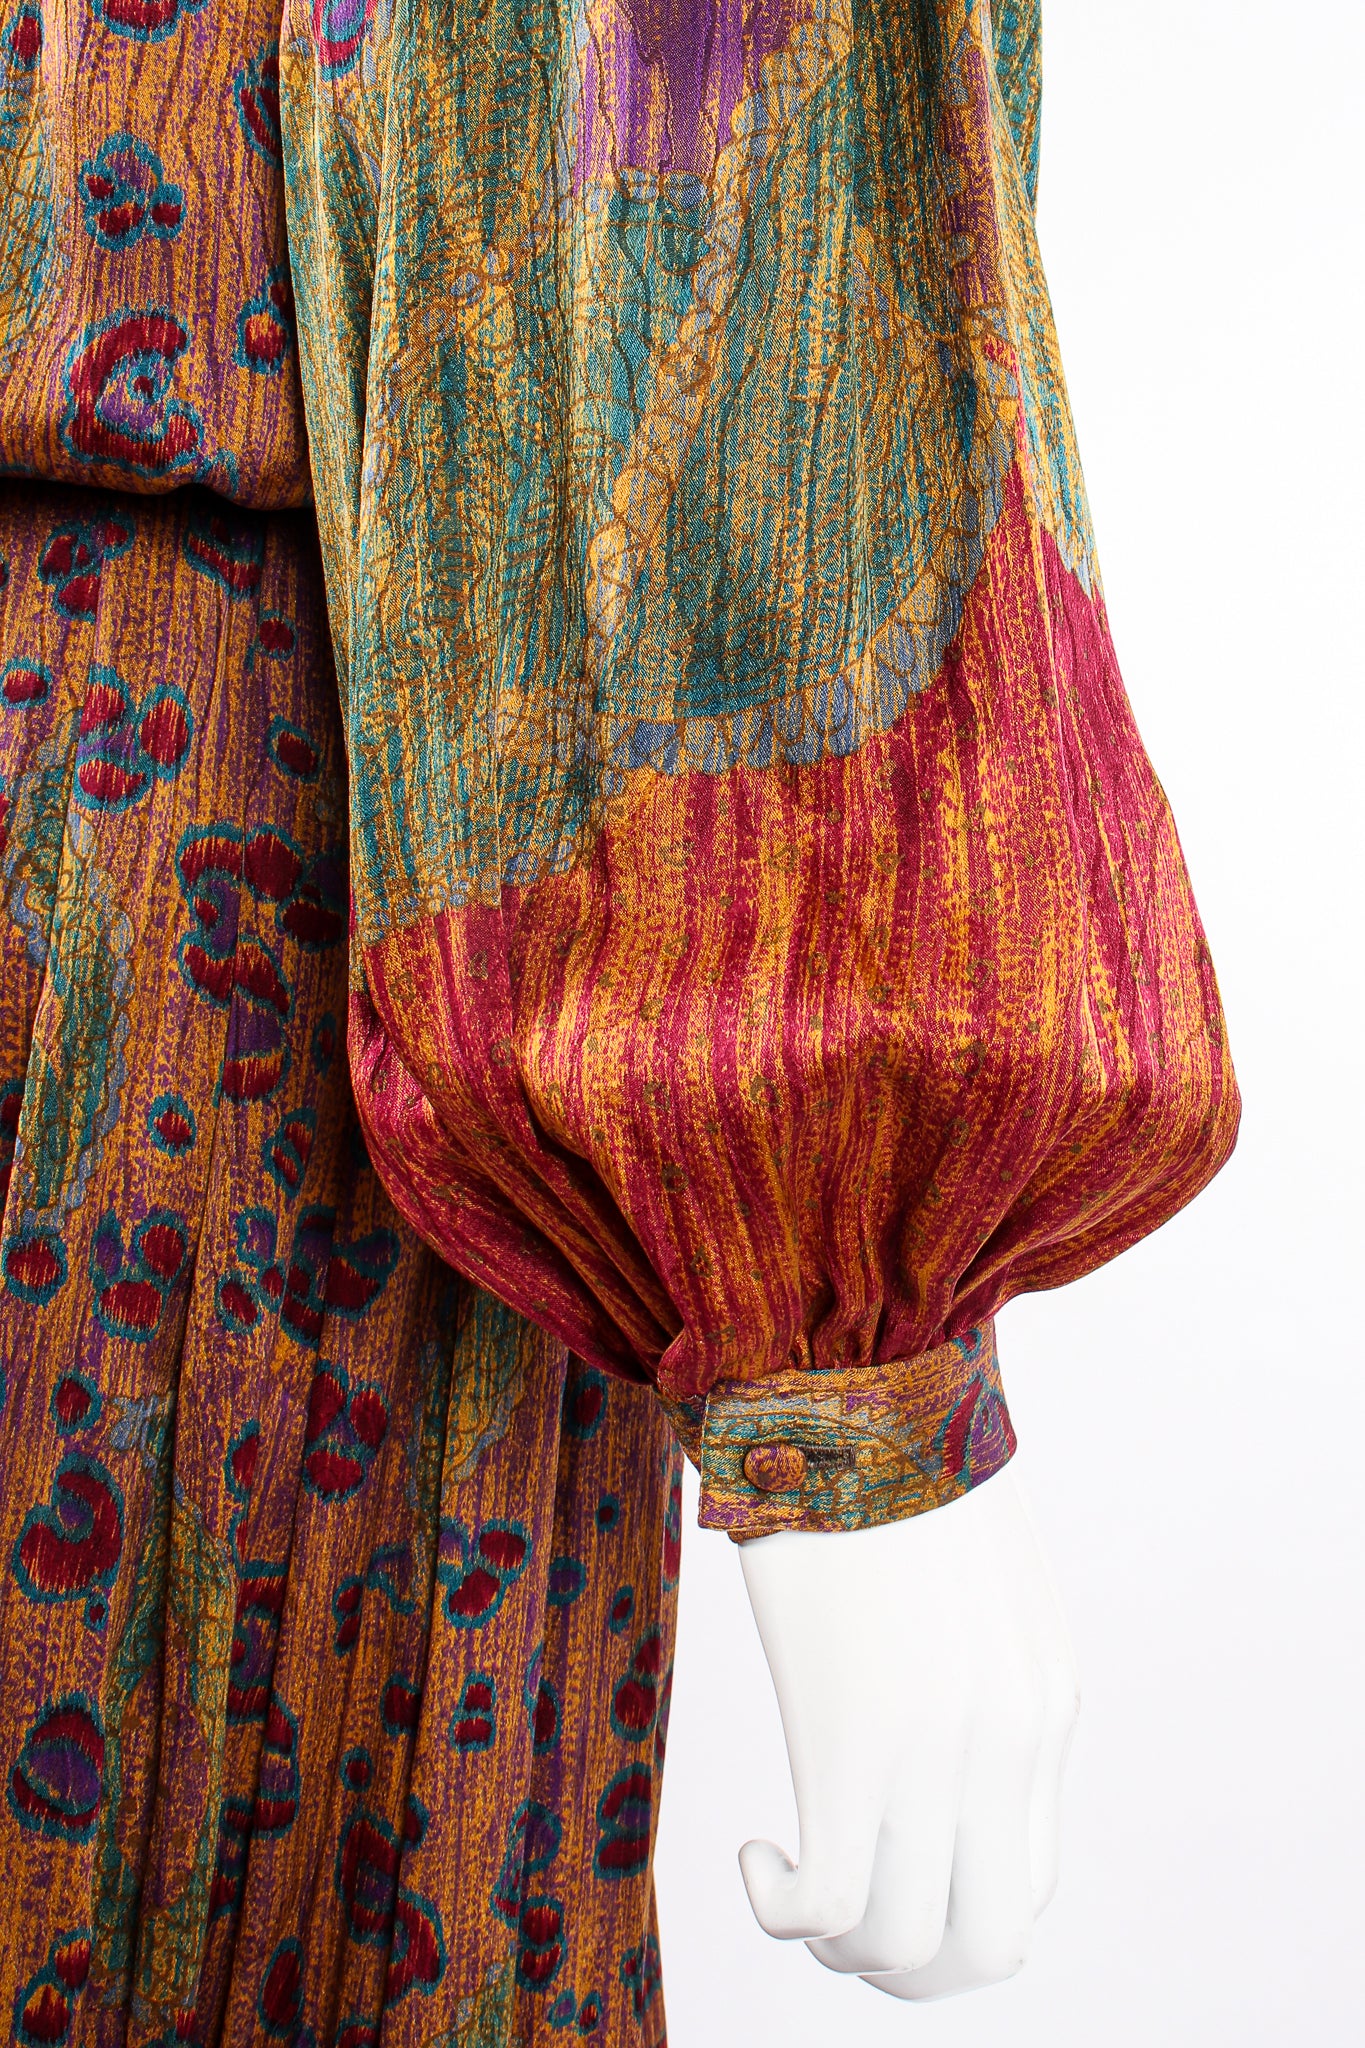 Vintage Oscar de la Renta Floral Embroidered Blouse & Skirt Set on Mannequin sleeve at Recess LA